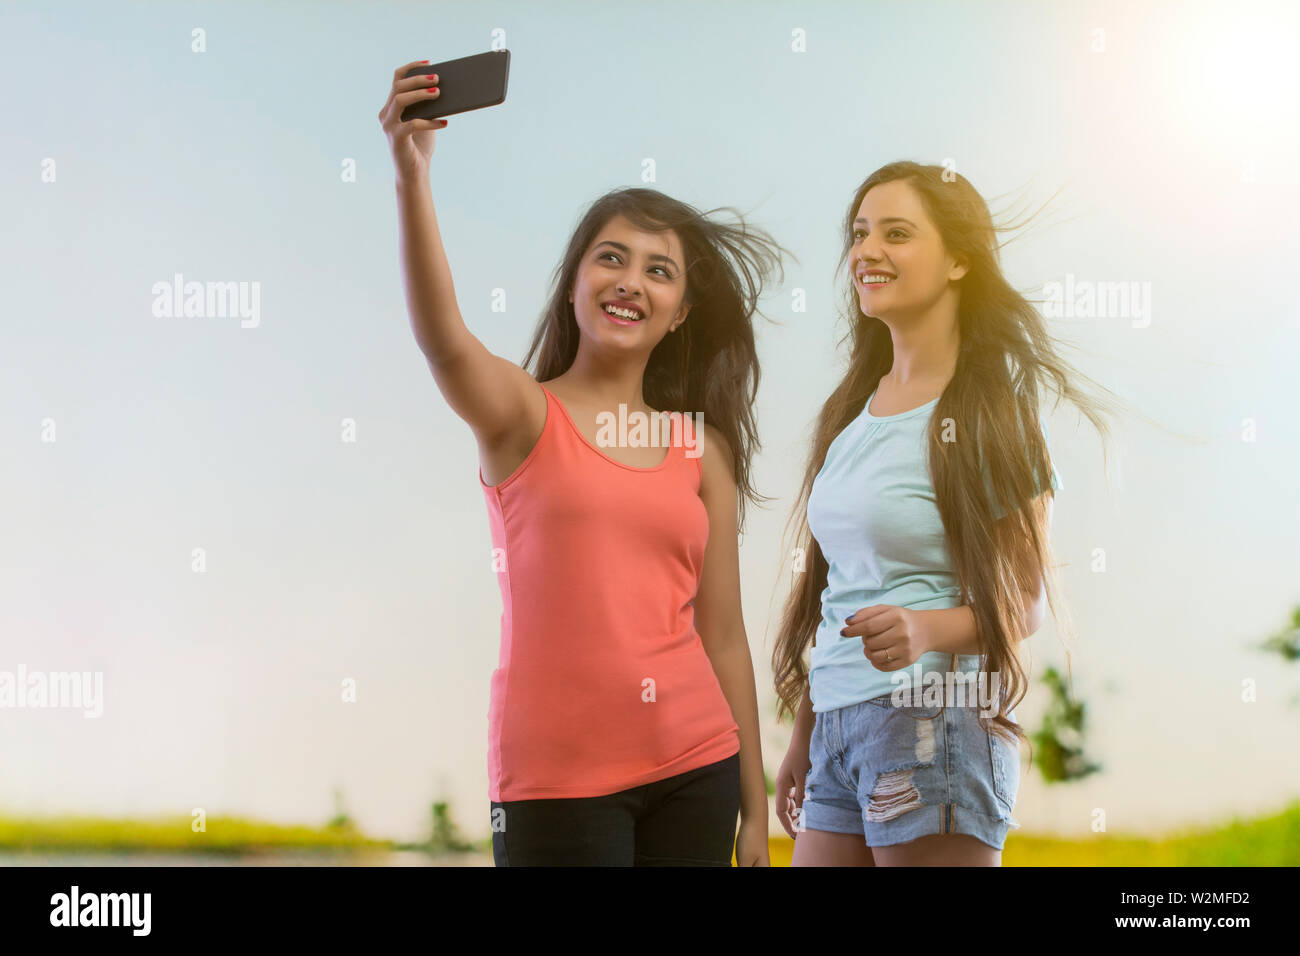 Sonriente joven teniendo un selfie mediante teléfono móvil con un amigo de pie afuera Foto de stock